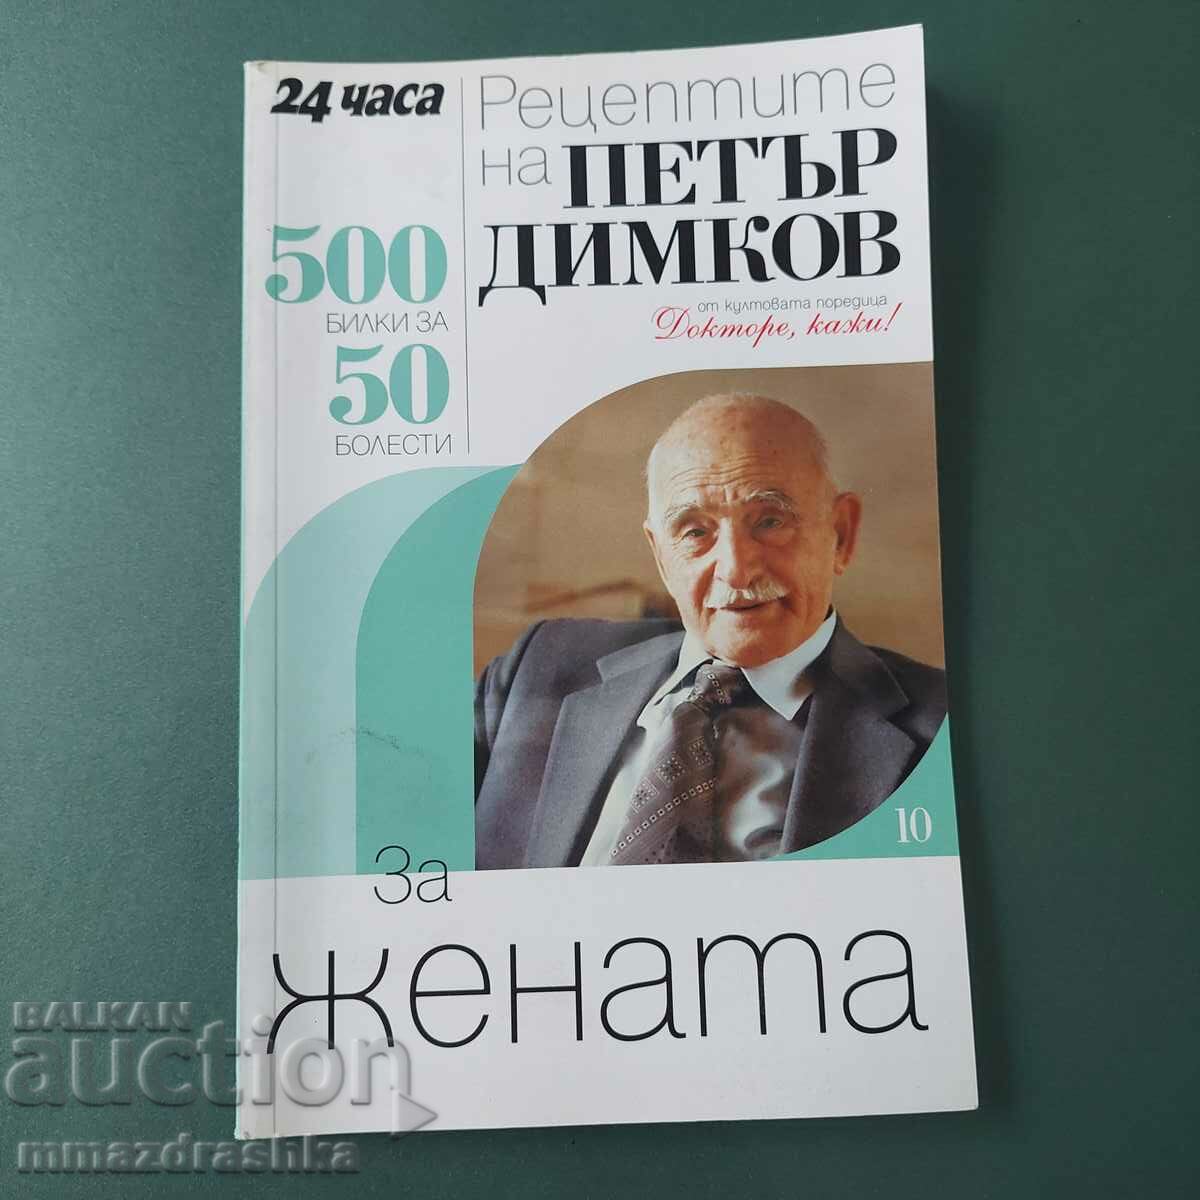 500 рецепти за жената, Петър Димков